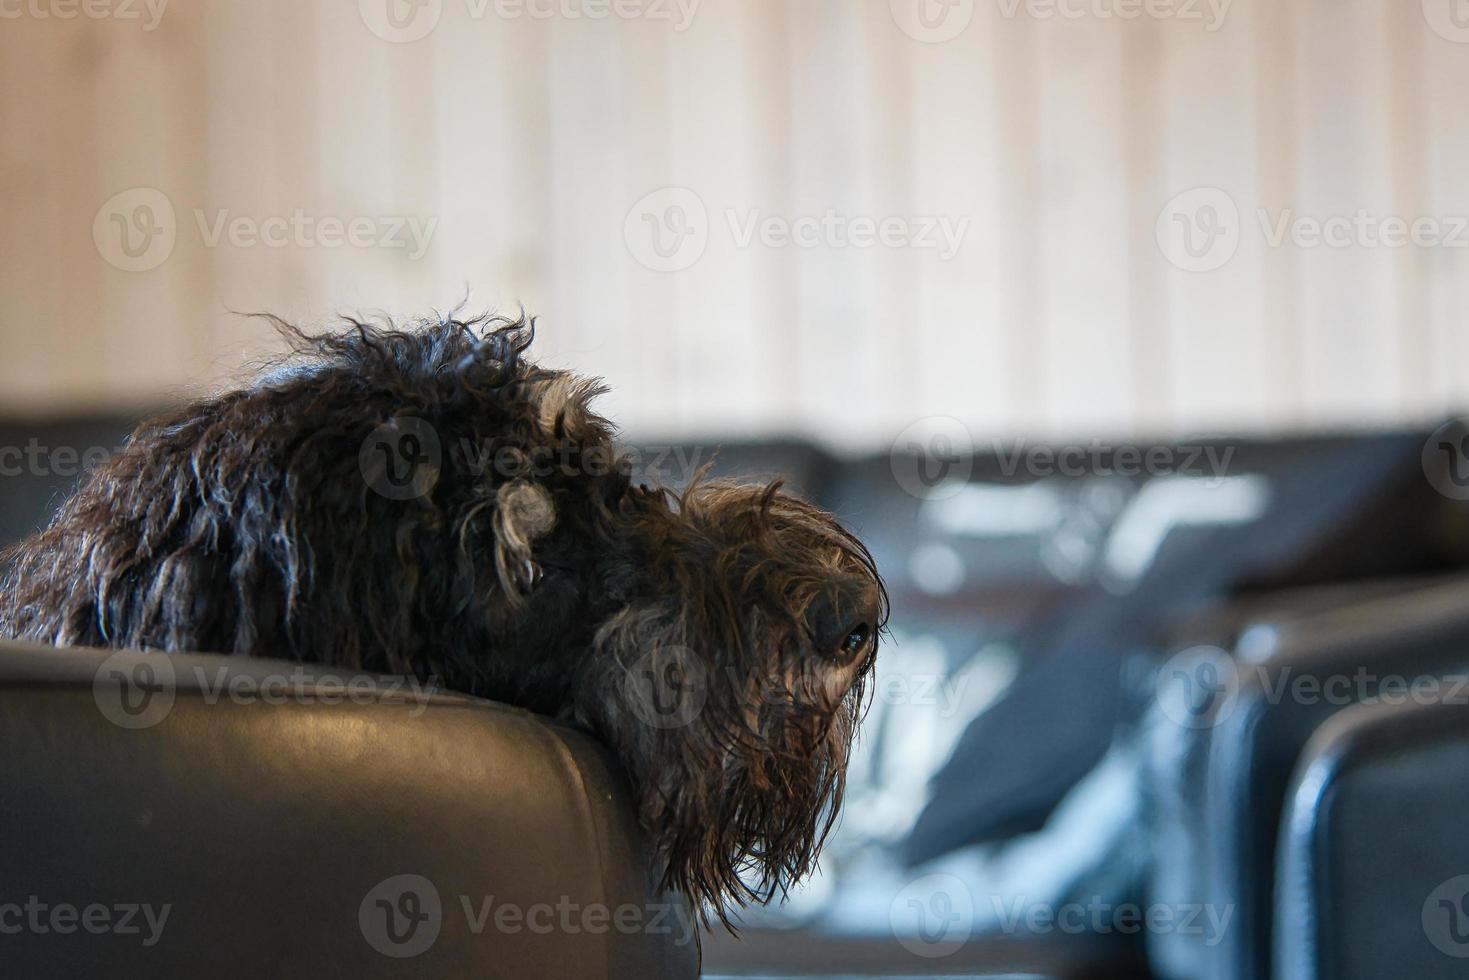 goldendoodle yace relajado en el sillón. perro de la familia escalofriante. foto de animales